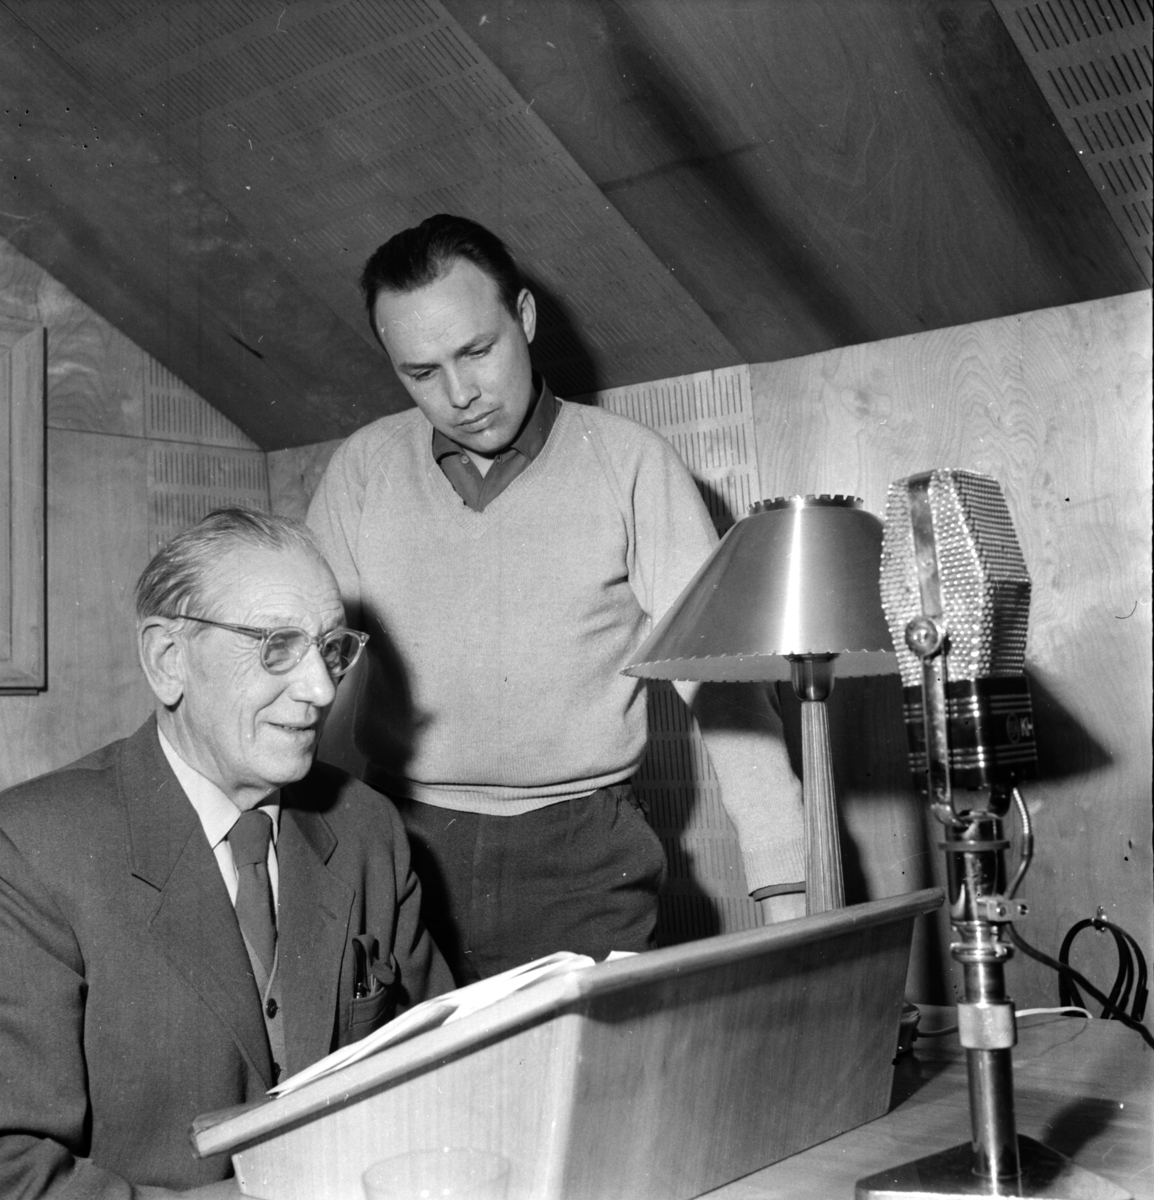 P-L Orgård på studion med Åke Engman och PW. Häger.
9/2 1960